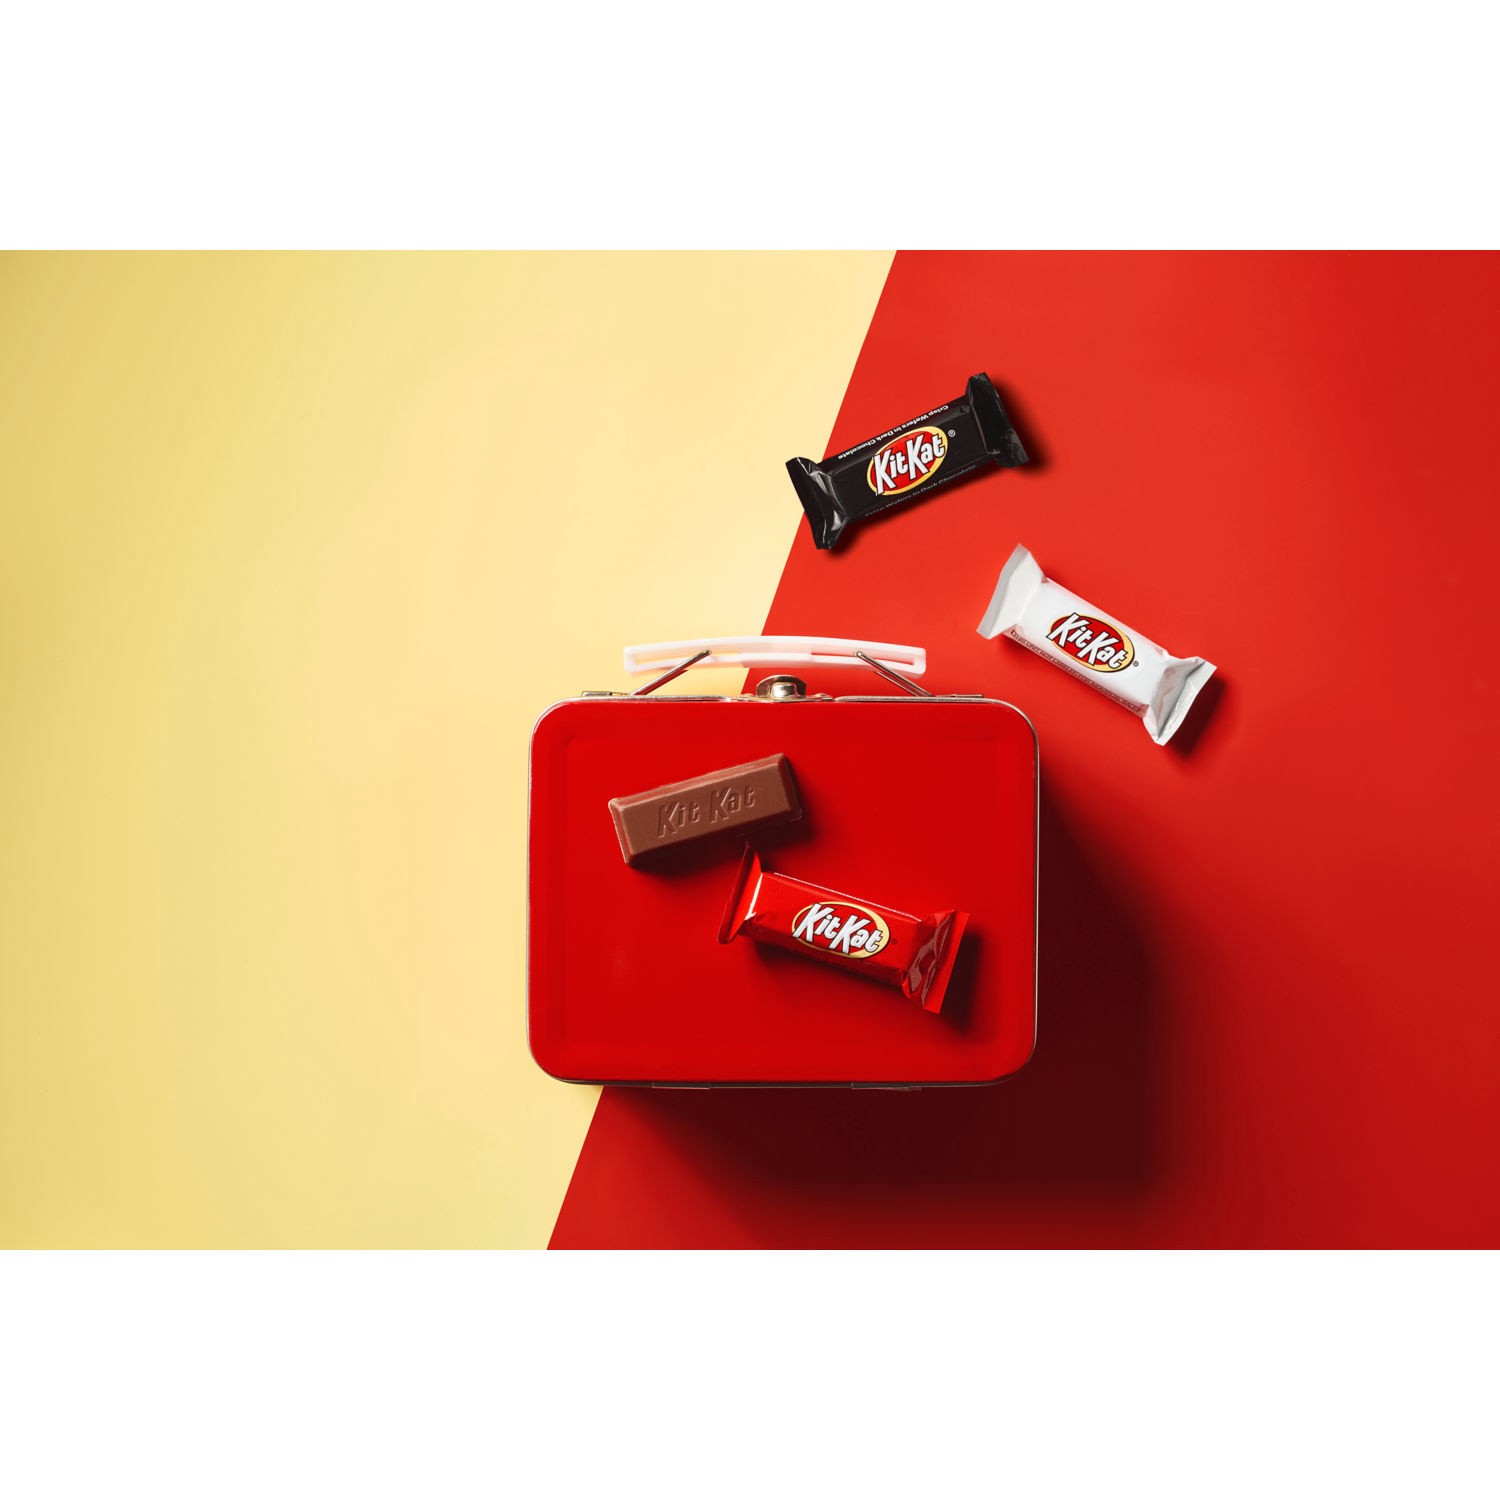 slide 3 of 7, Kit Kat Assorted Candy Bars Bag, 32.1 oz